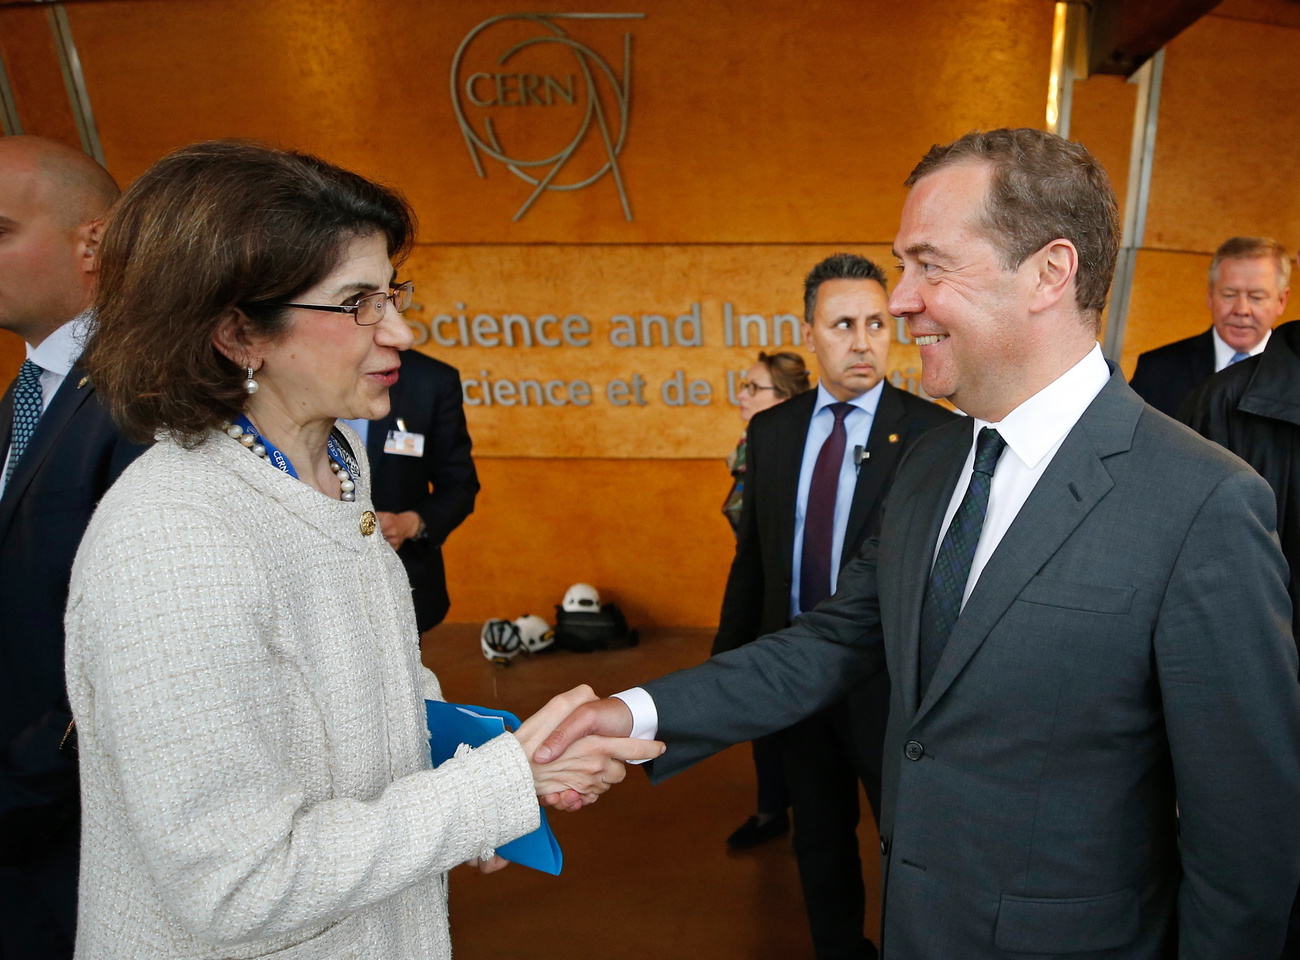 Le premier ministre russe et la directrice du CERN se serrent la main.